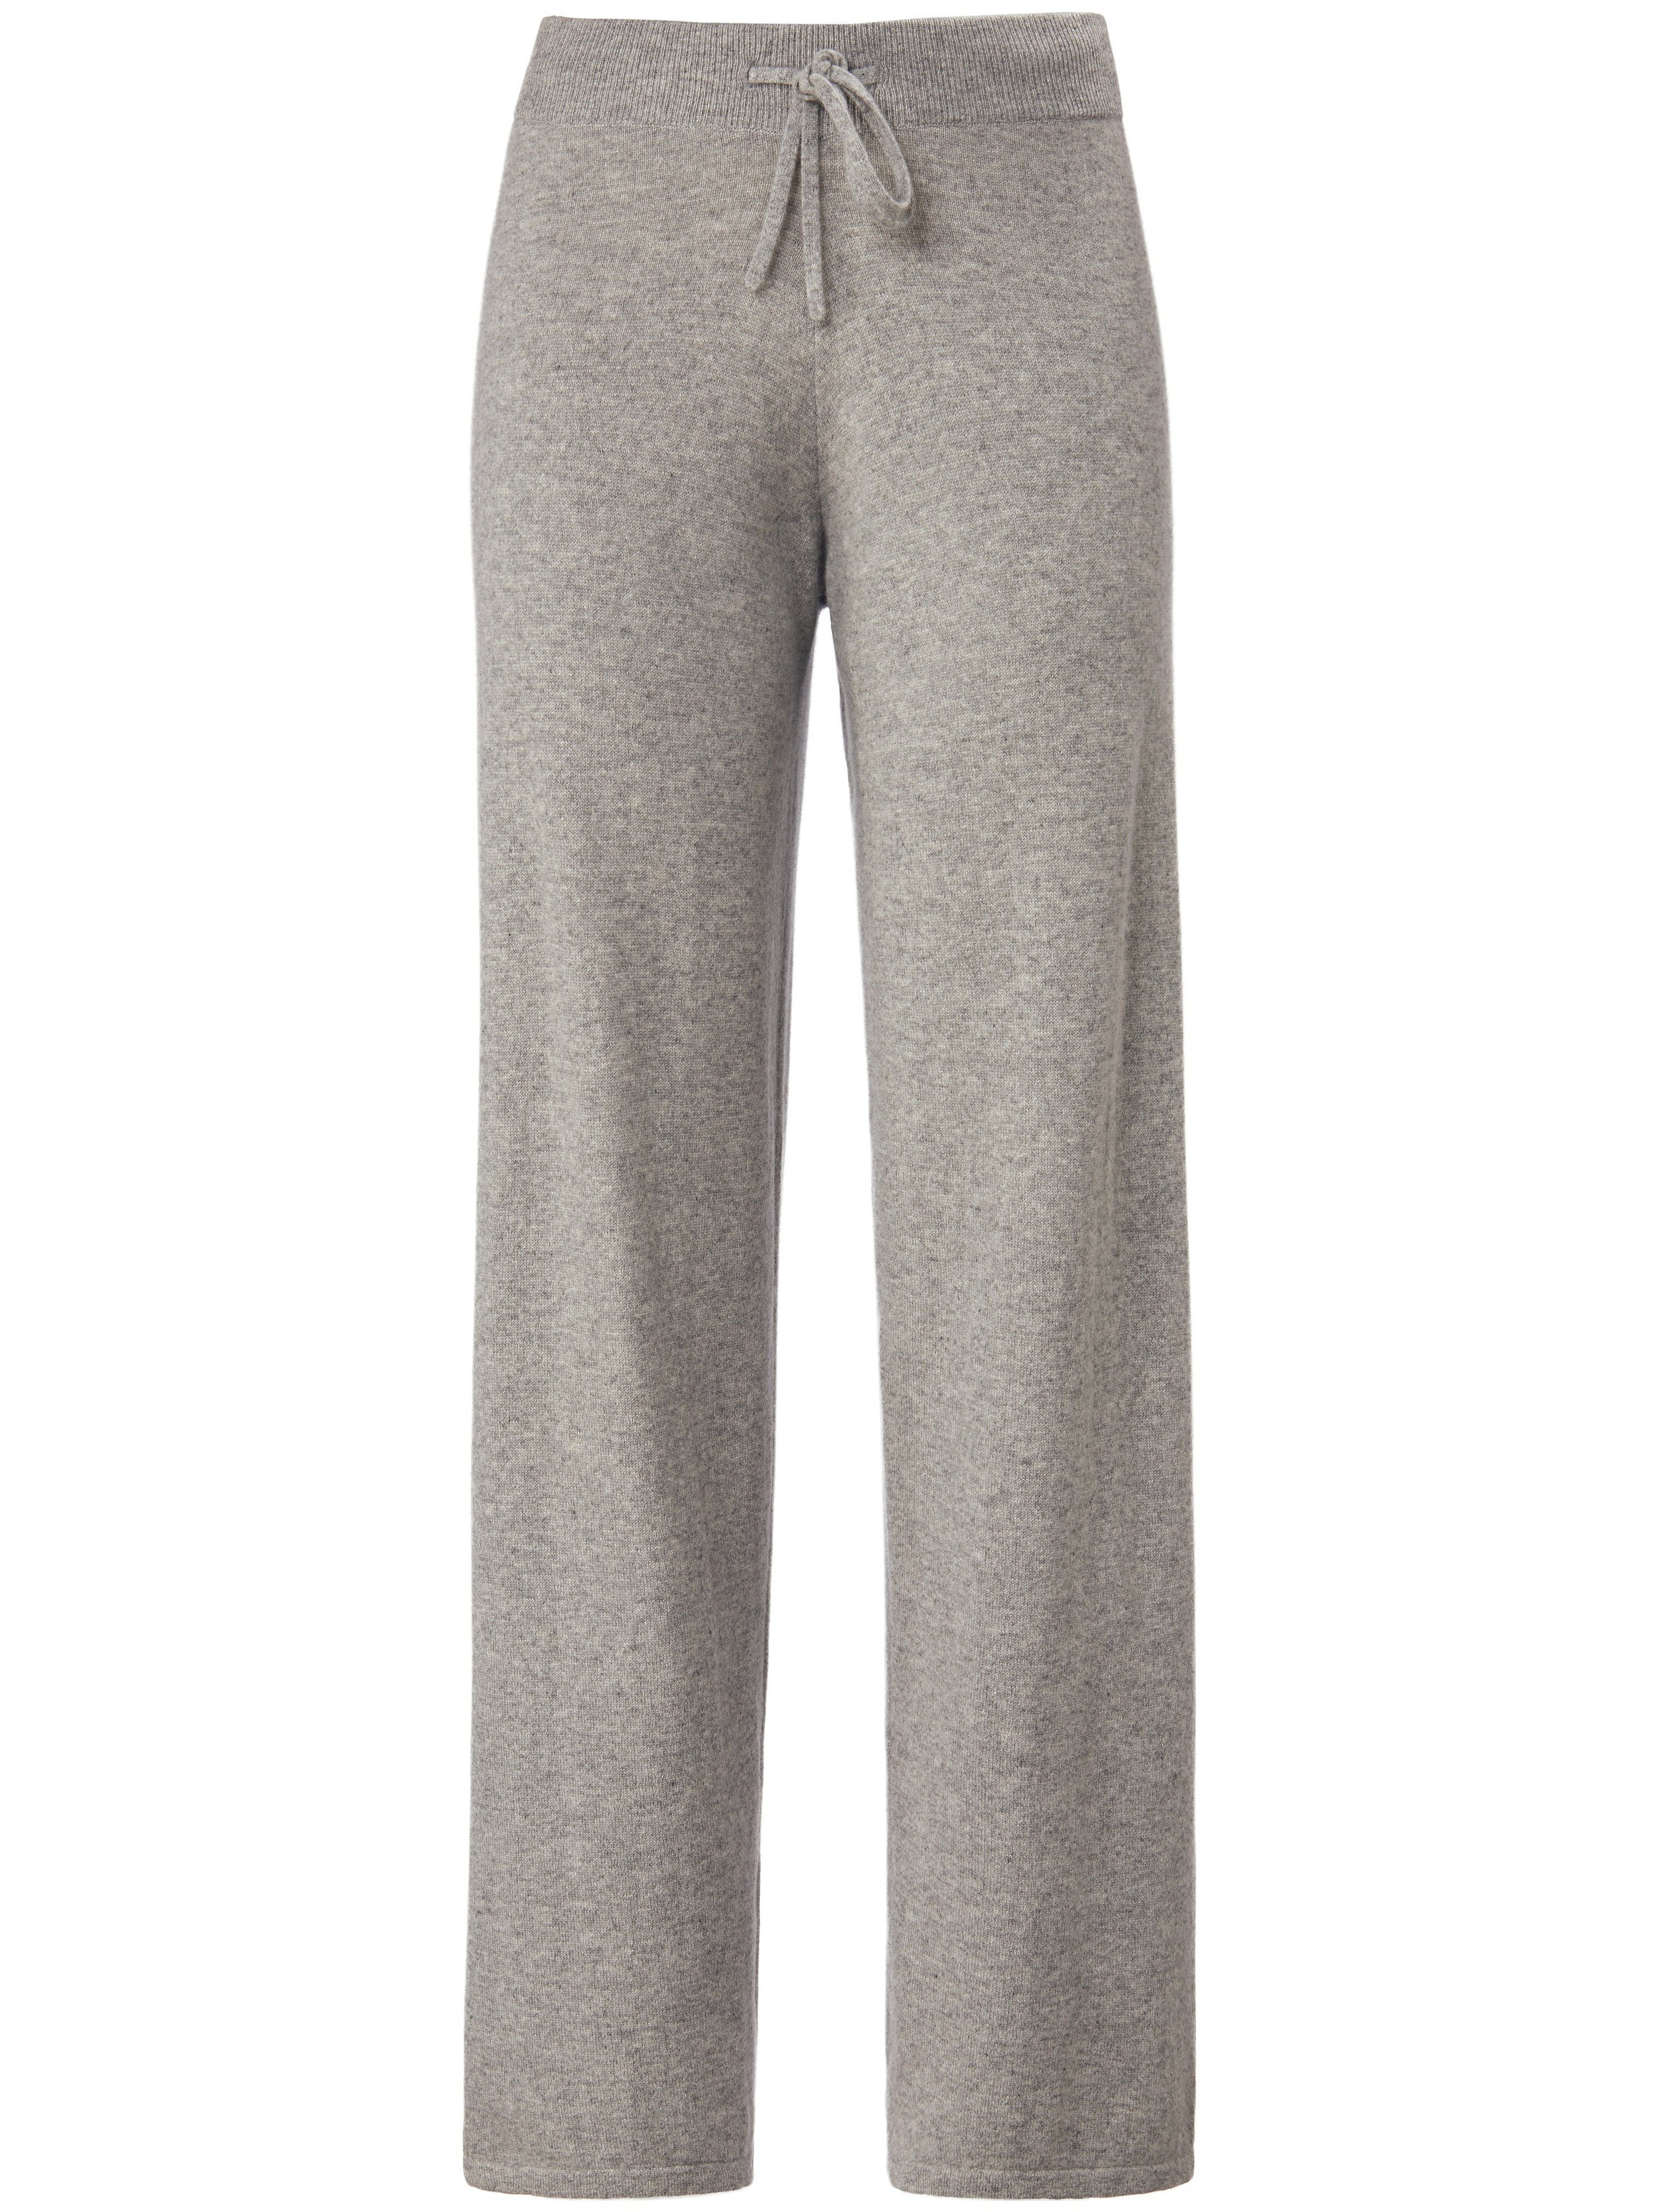 Le pantalon maille 100% cachemire  include gris taille 50